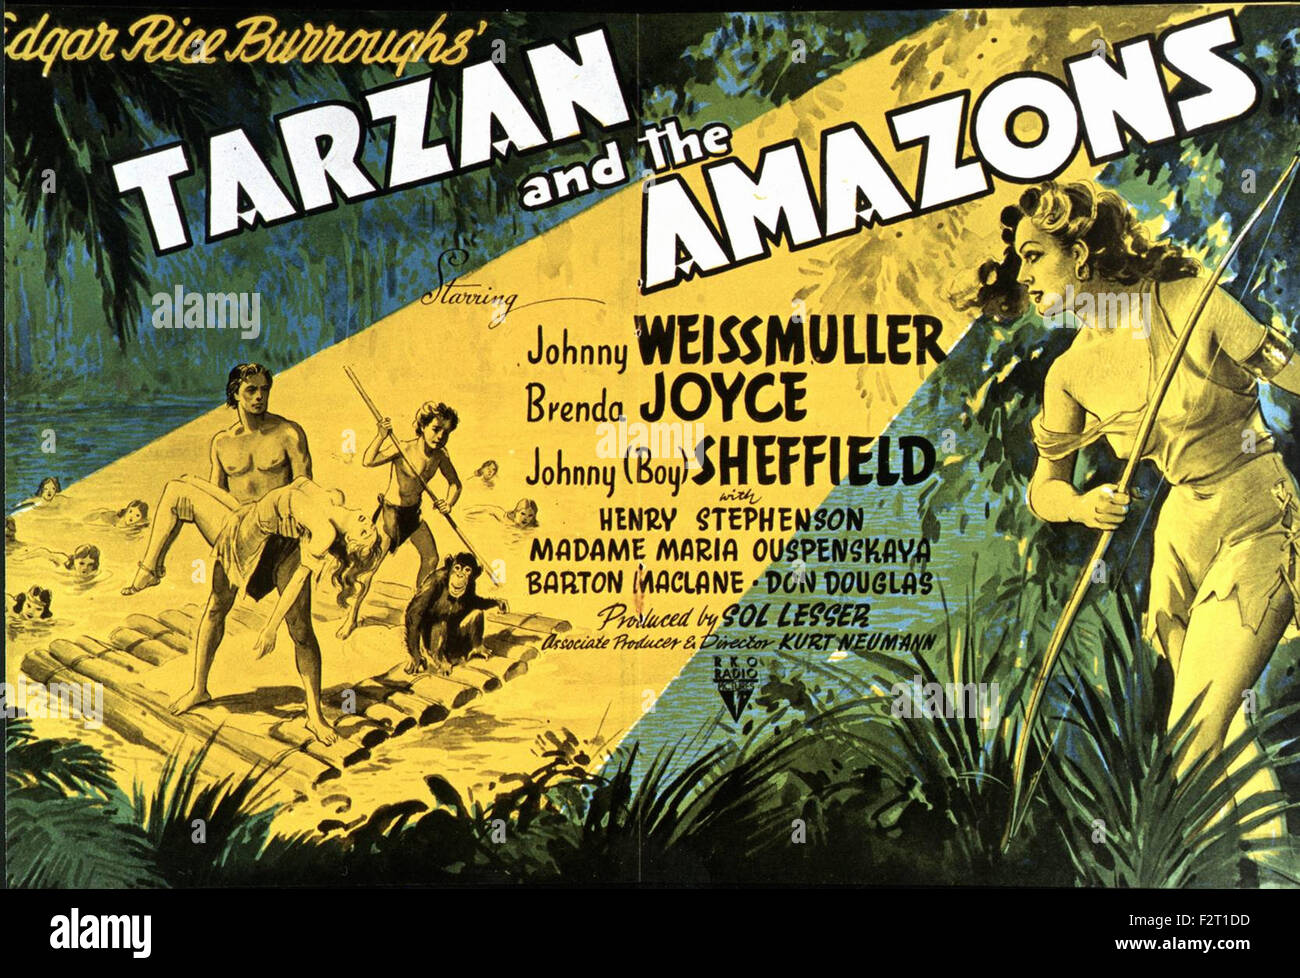 Tarzan and the Amazons - Movie Poster Stock Photo